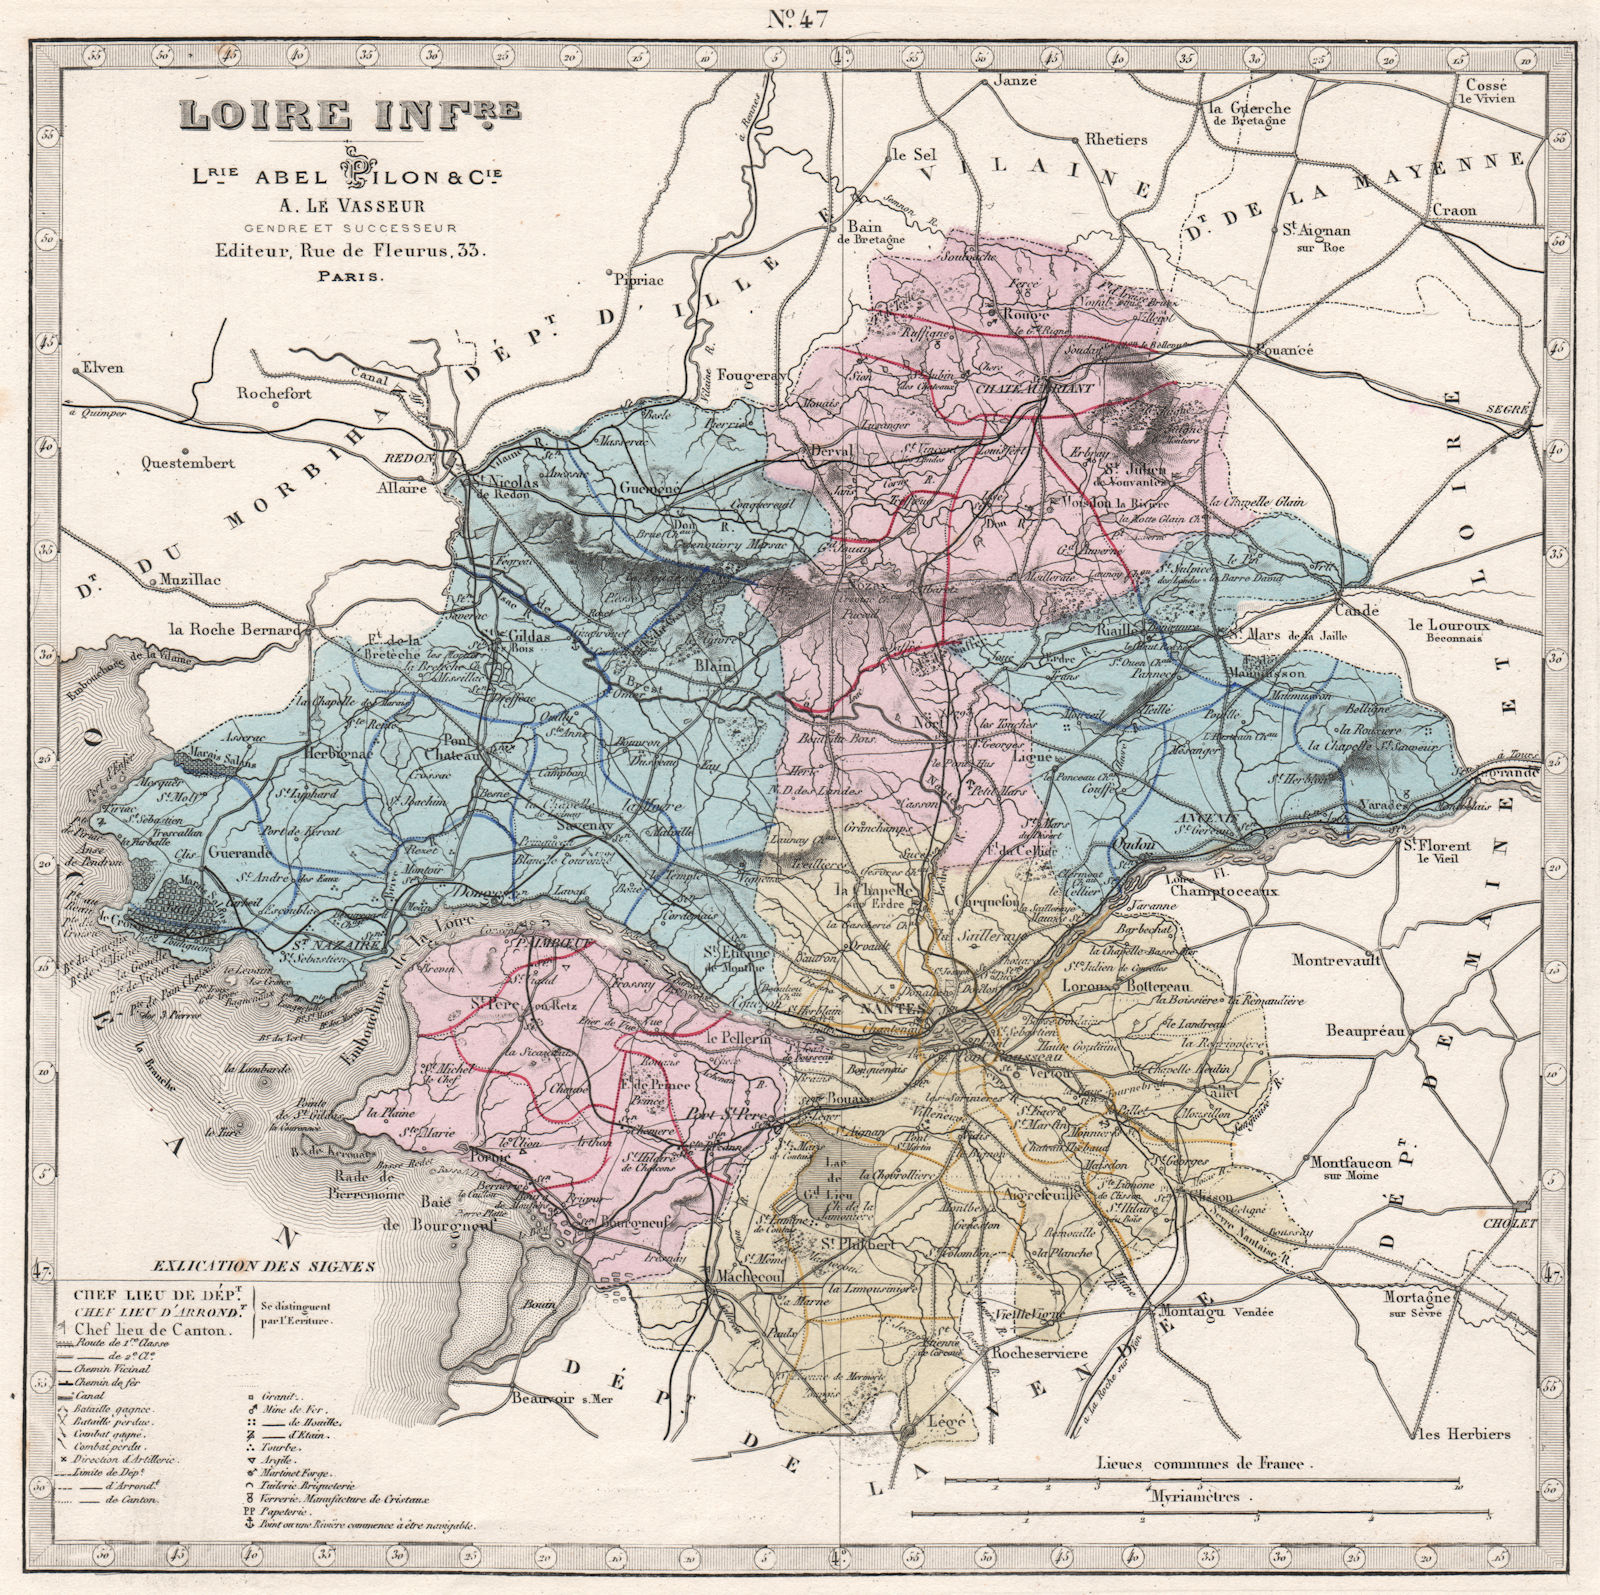 LOIRE-INFERIEURE/Atlantique department. Battles. Resources. LE VASSEUR 1876 map